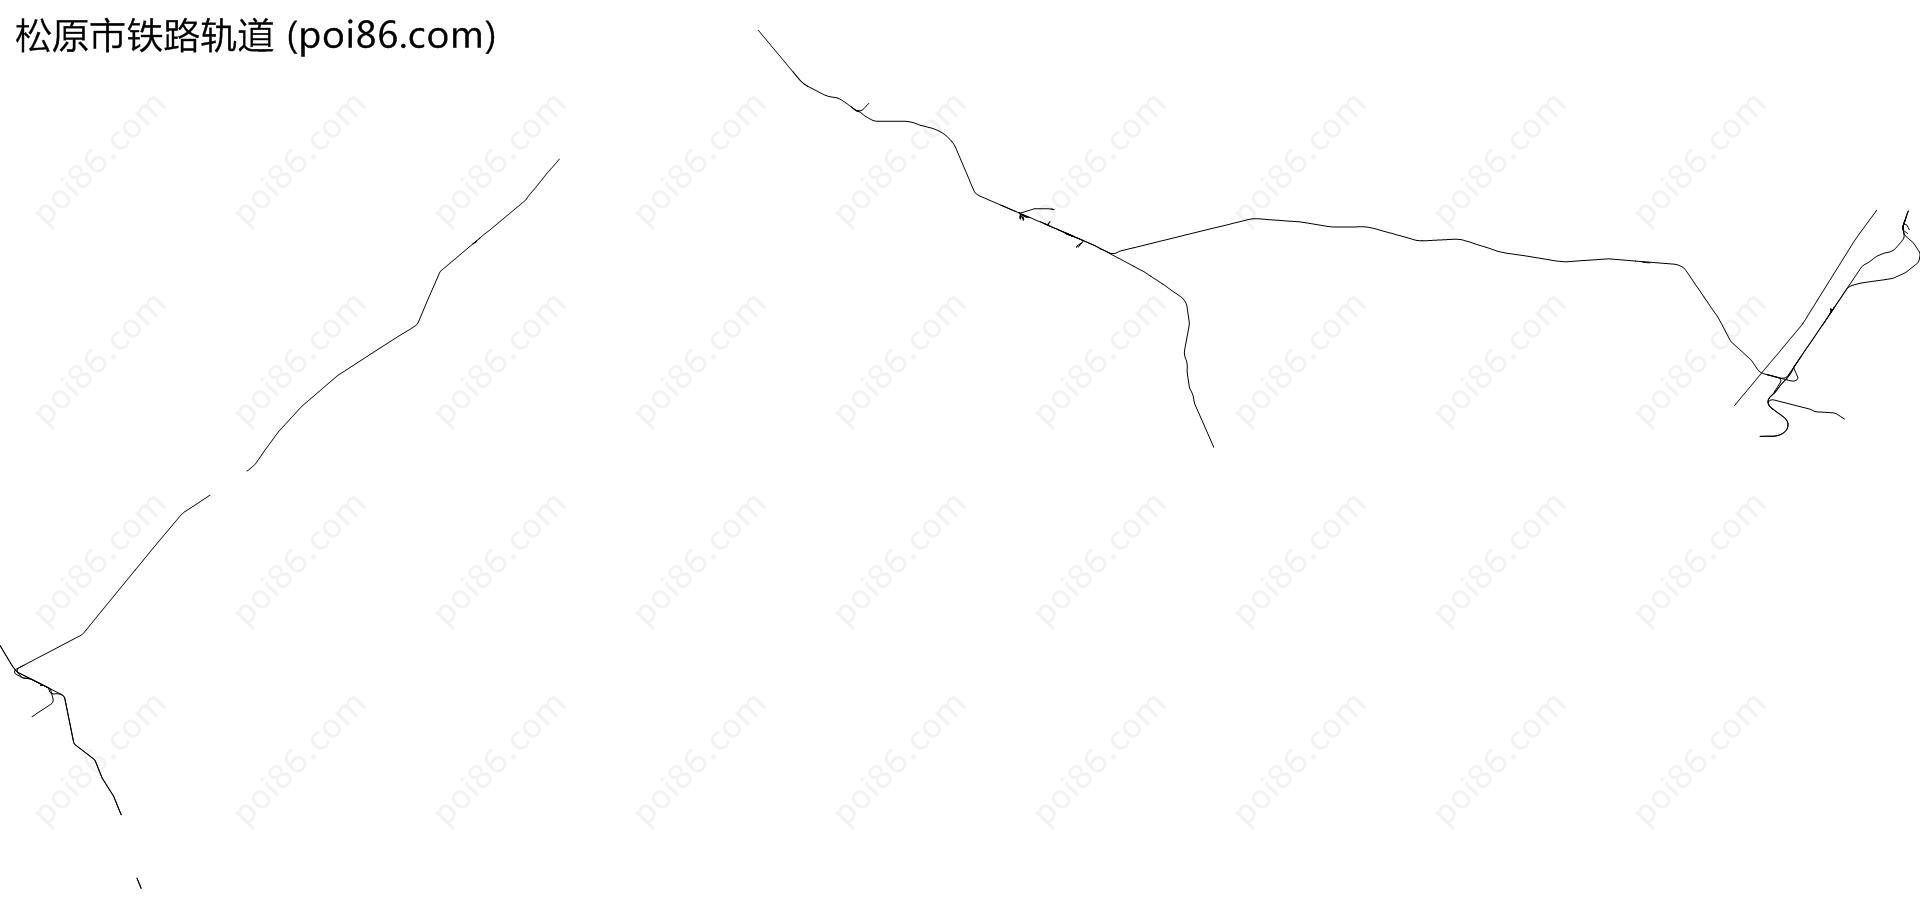 松原市铁路轨道地图